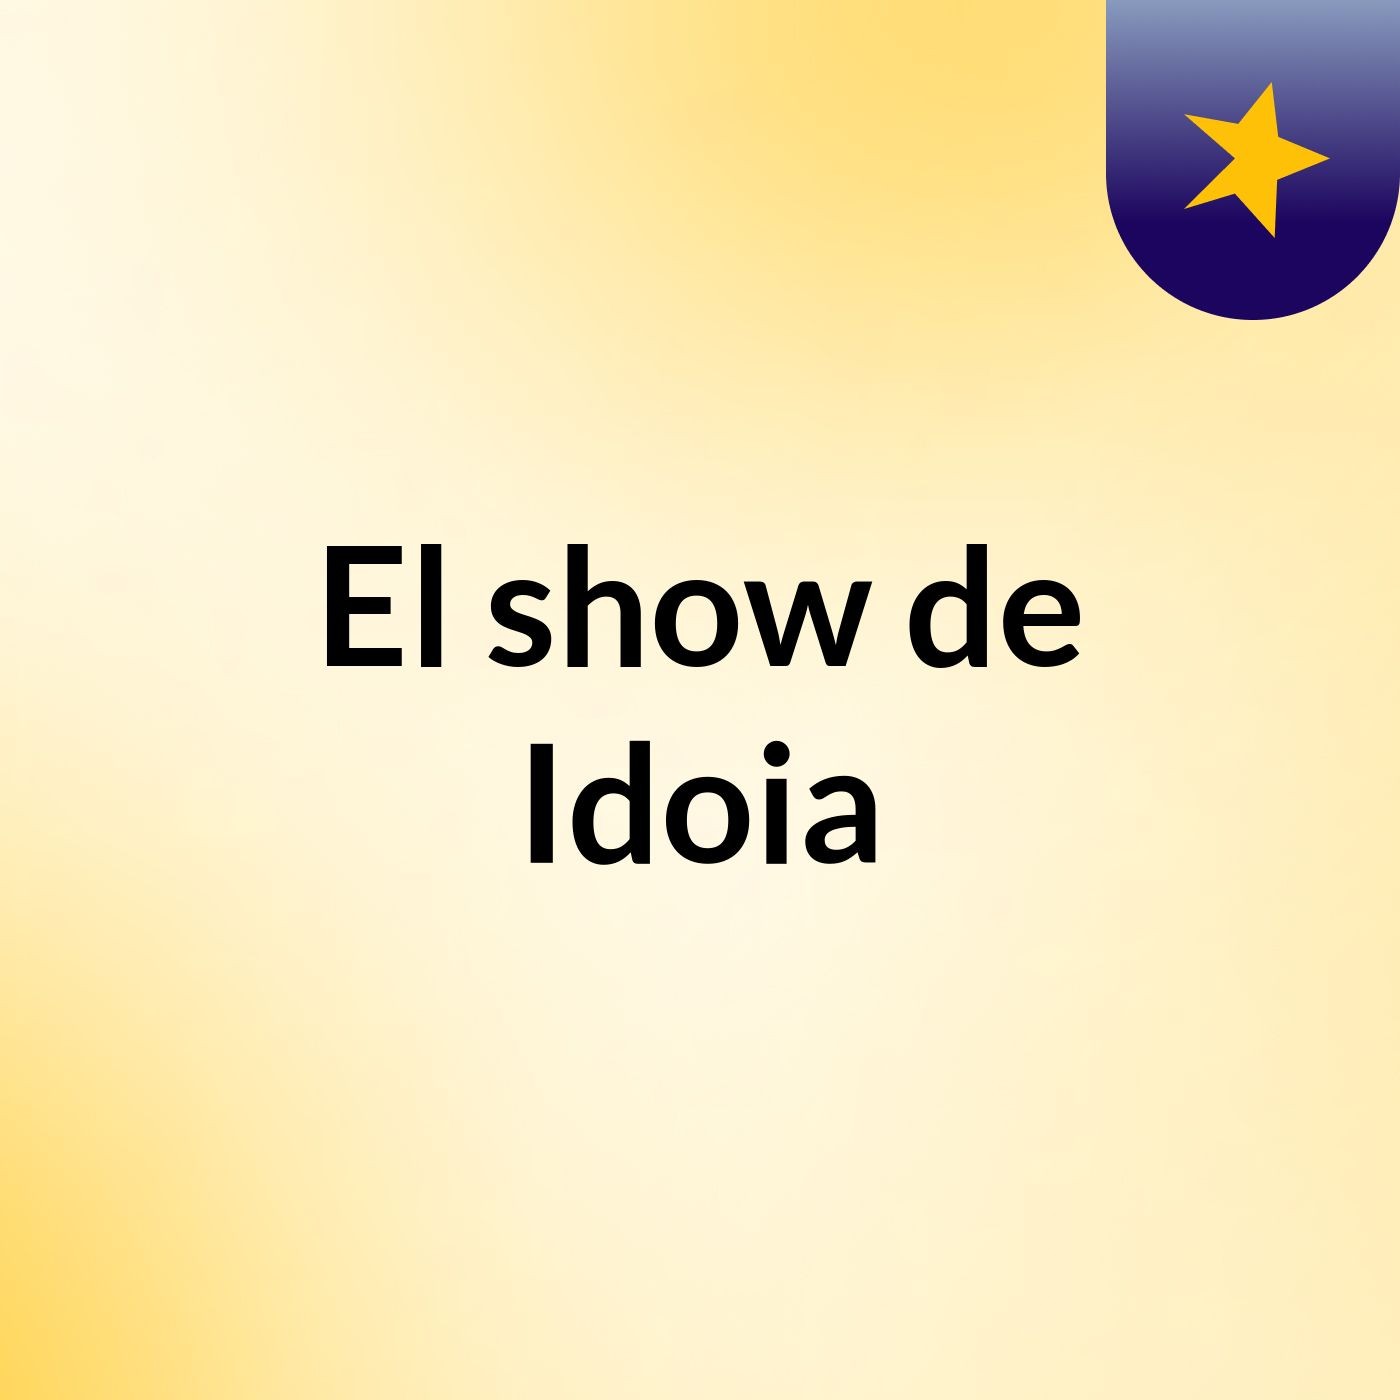 El show de Idoia